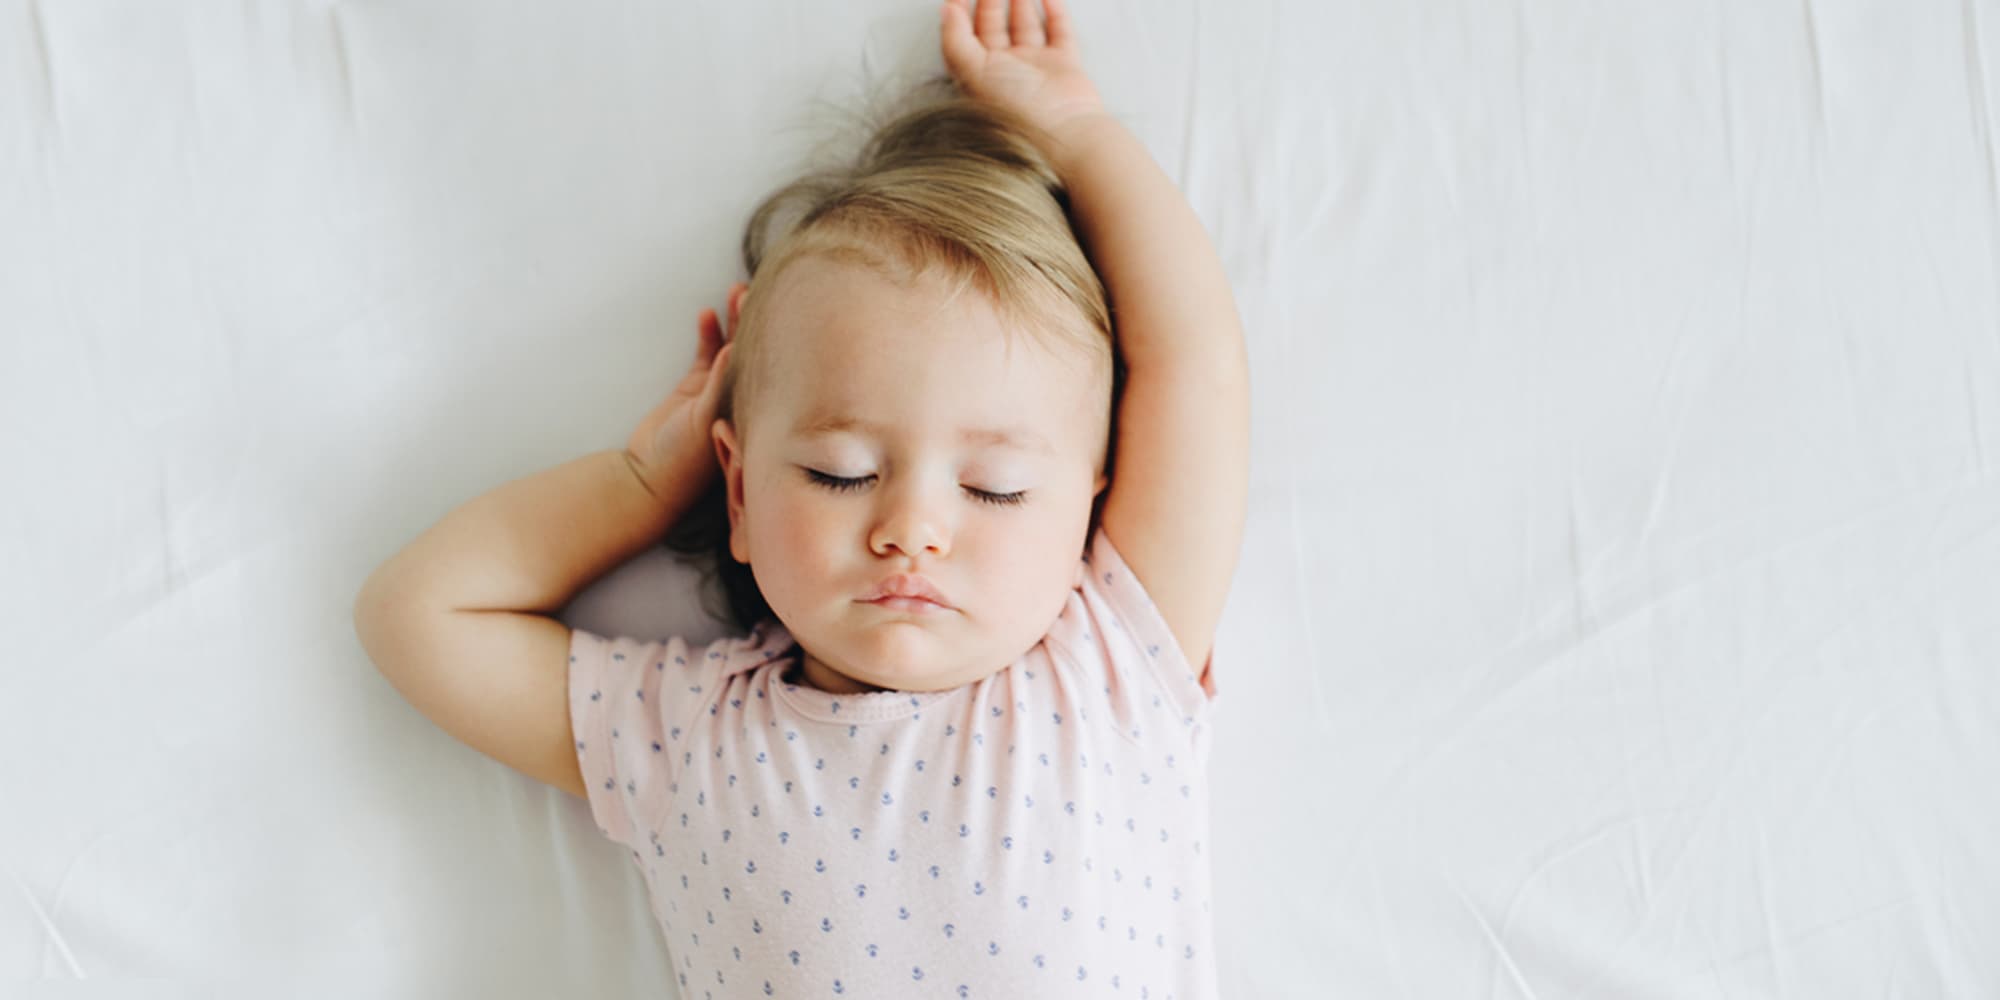 ▲寶寶睡眠時間依照成長各階段有不同的建議睡覺時數，爸媽能依據寶寶睡眠習慣來調整寶寶睡覺的作息與次數，讓寶寶更健康地長大。